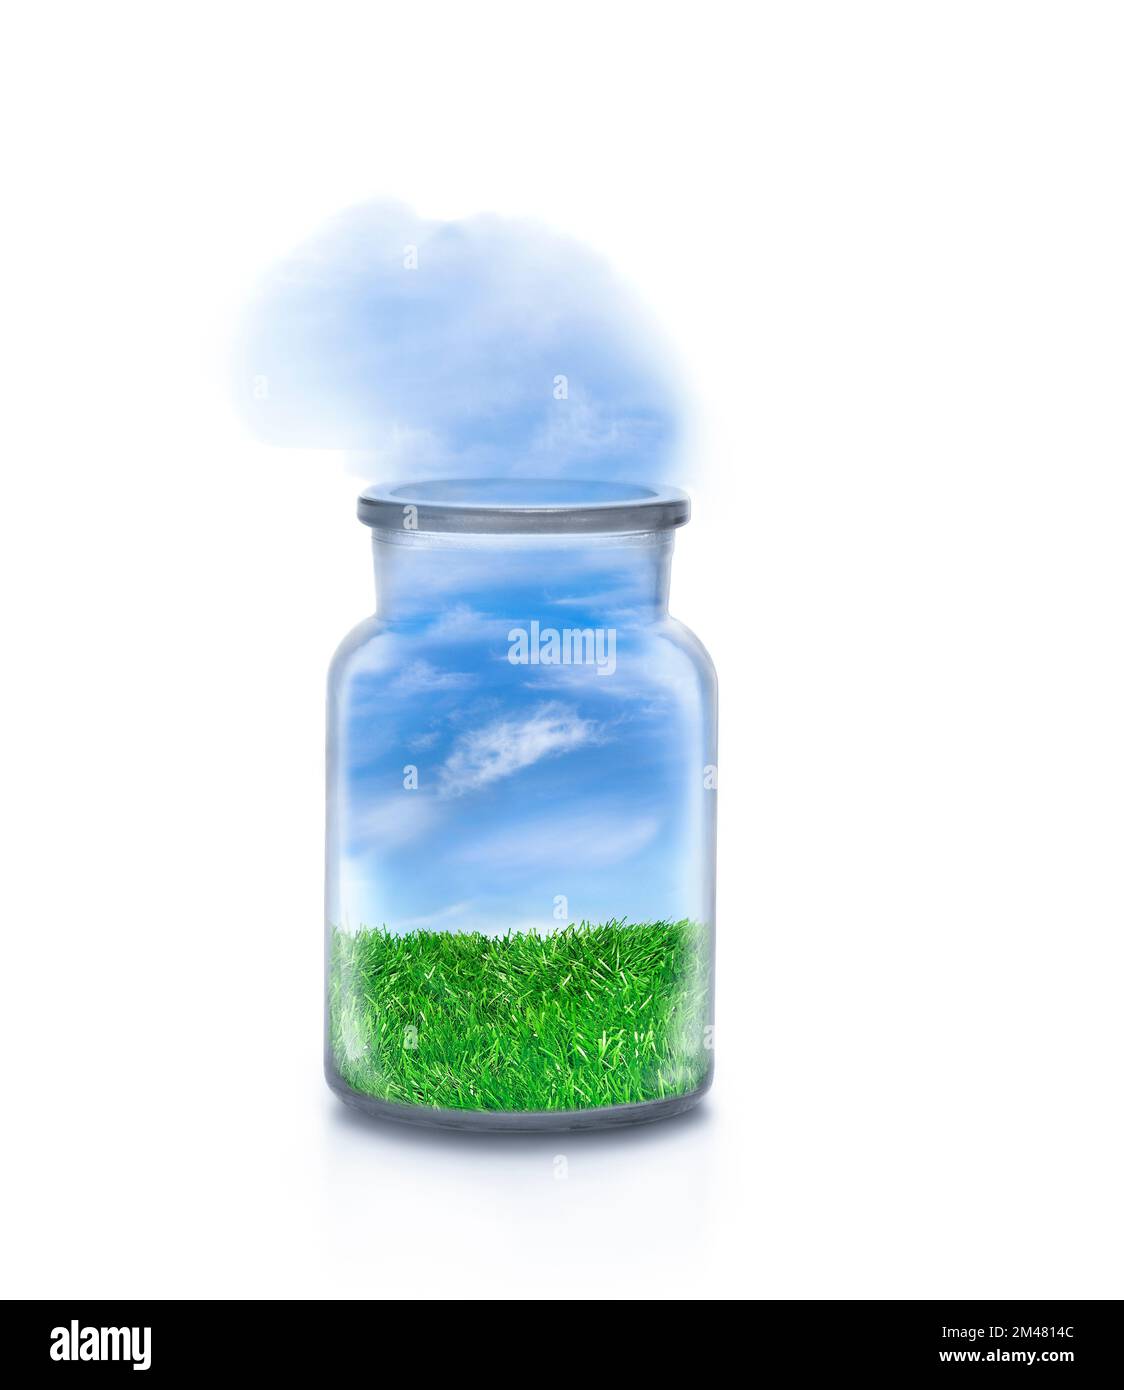 Paesaggio con erba all'interno di una bottiglia chimica su sfondo bianco. Cielo accogliente che scorre all'esterno. Divertente concetto ecologico e sostenibile. Foto Stock